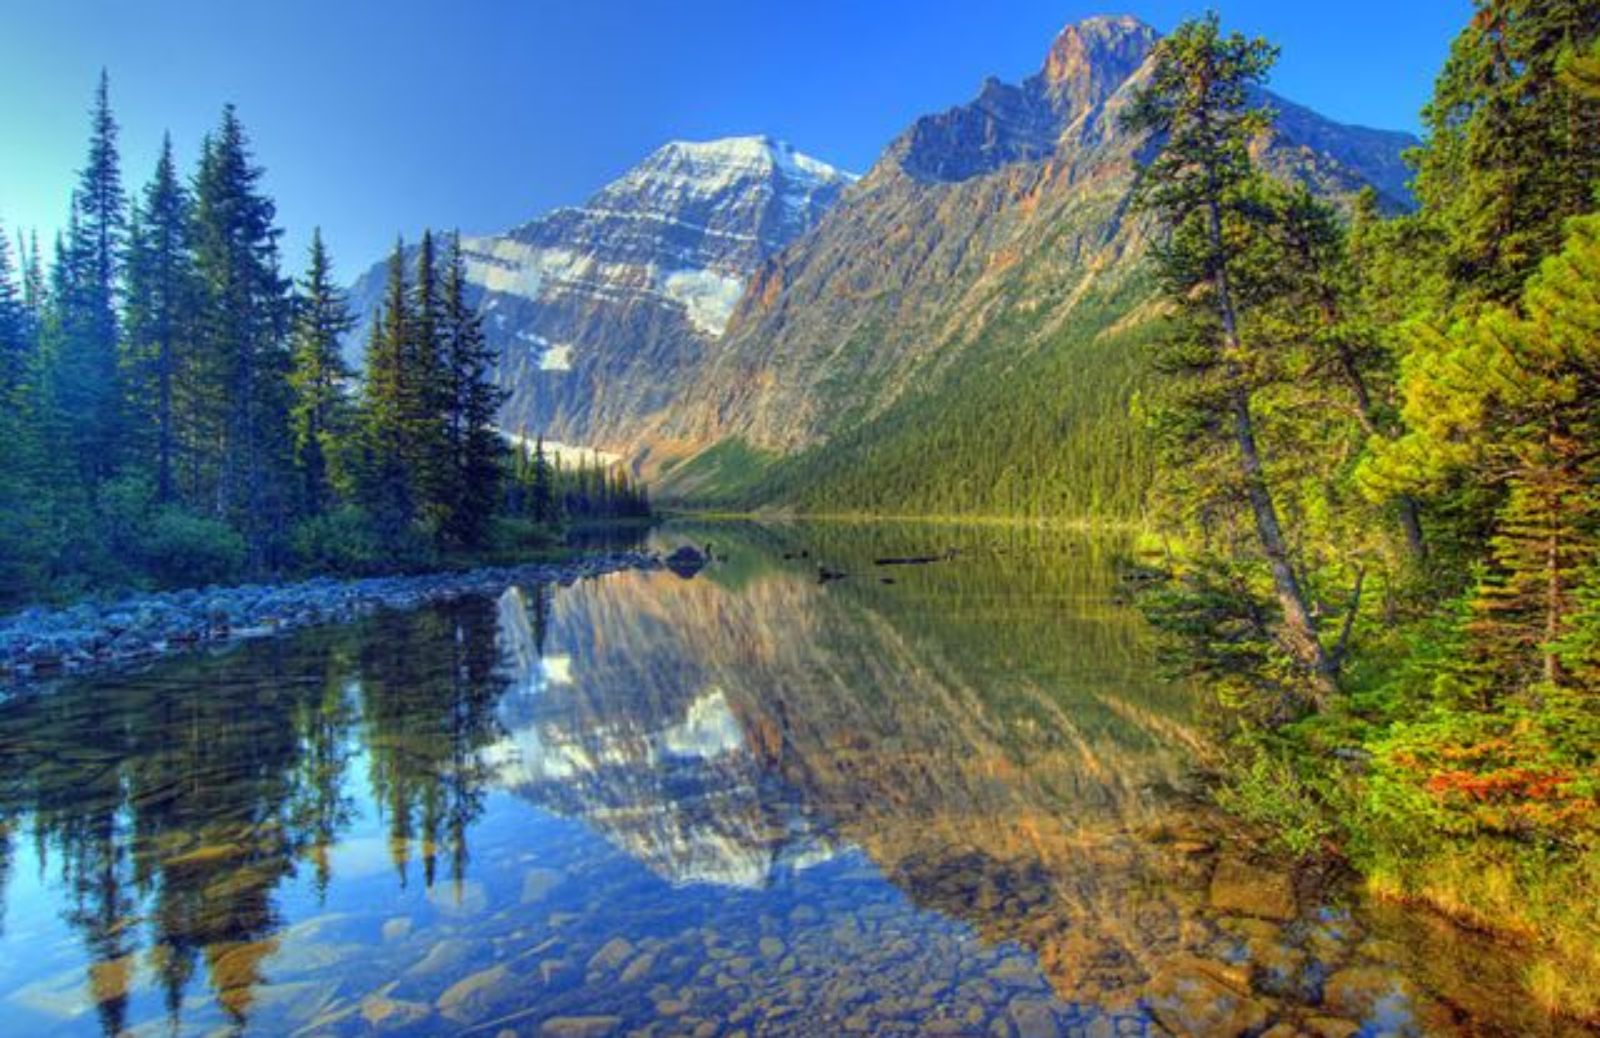 Canada: ingresso gratis nei parchi nazionali per tutto il 2017 